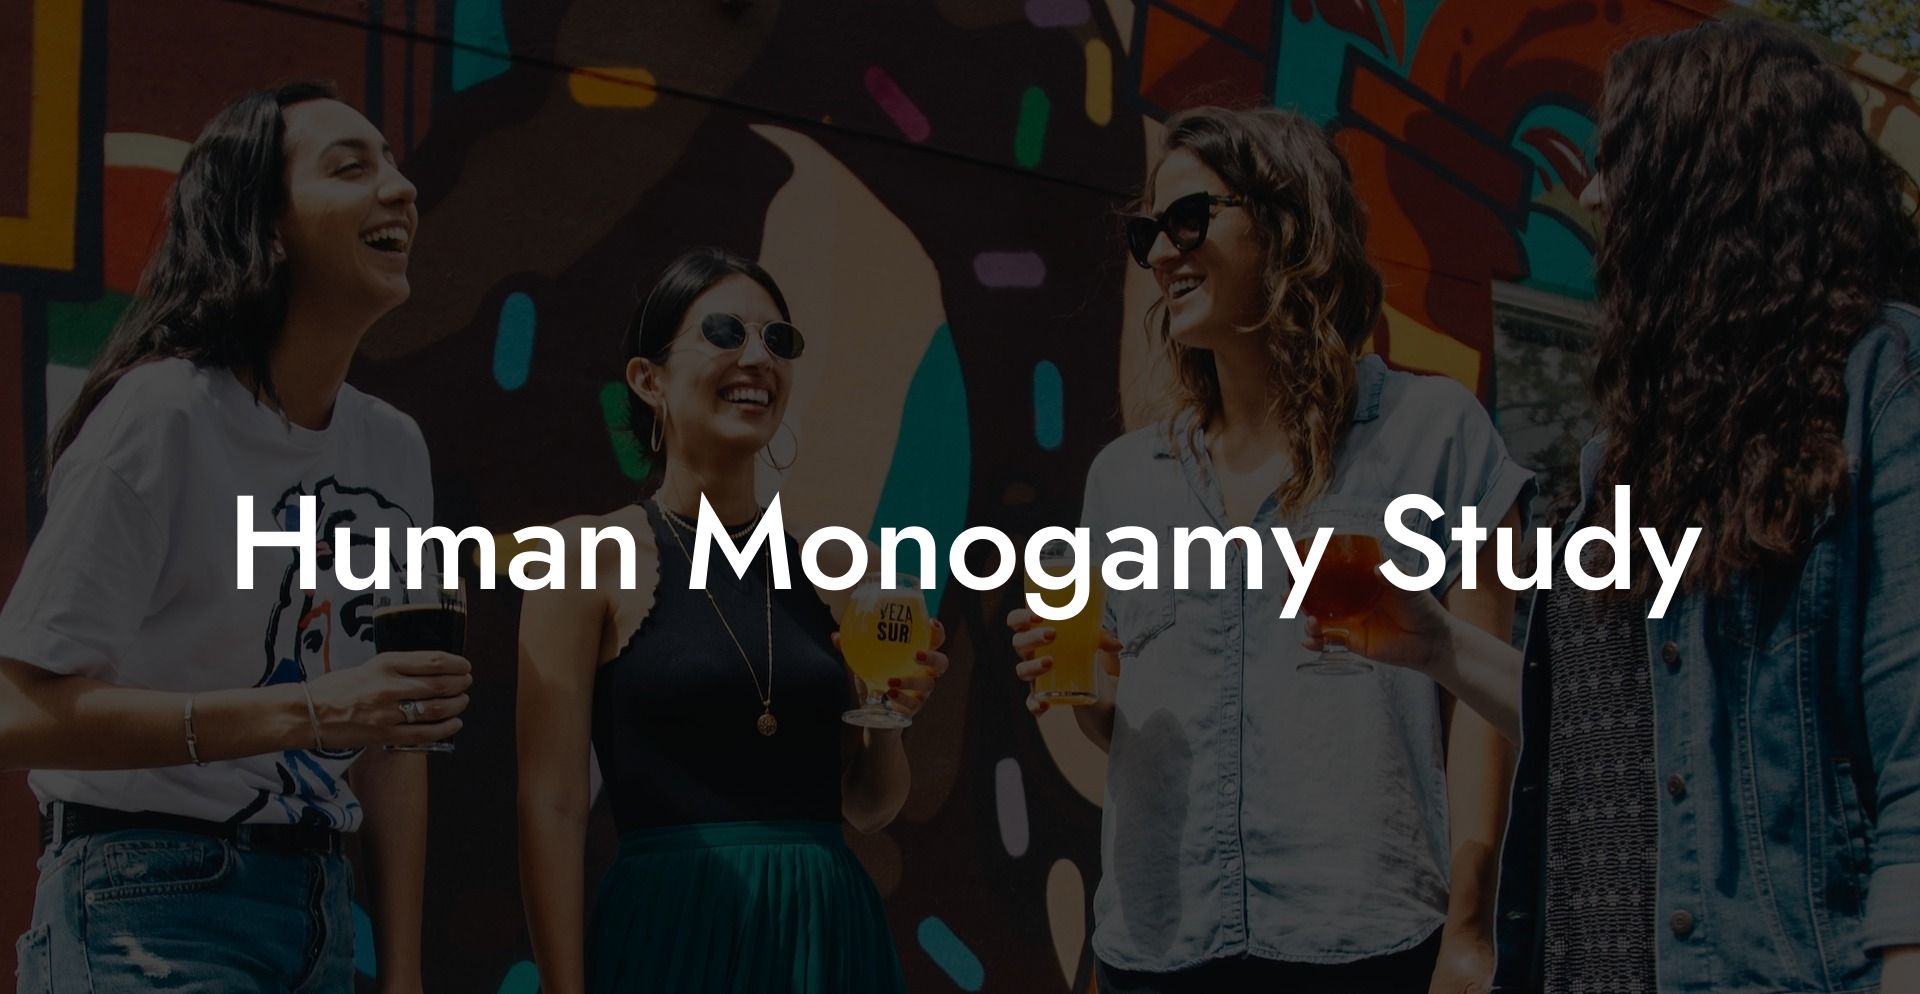 Human Monogamy Study